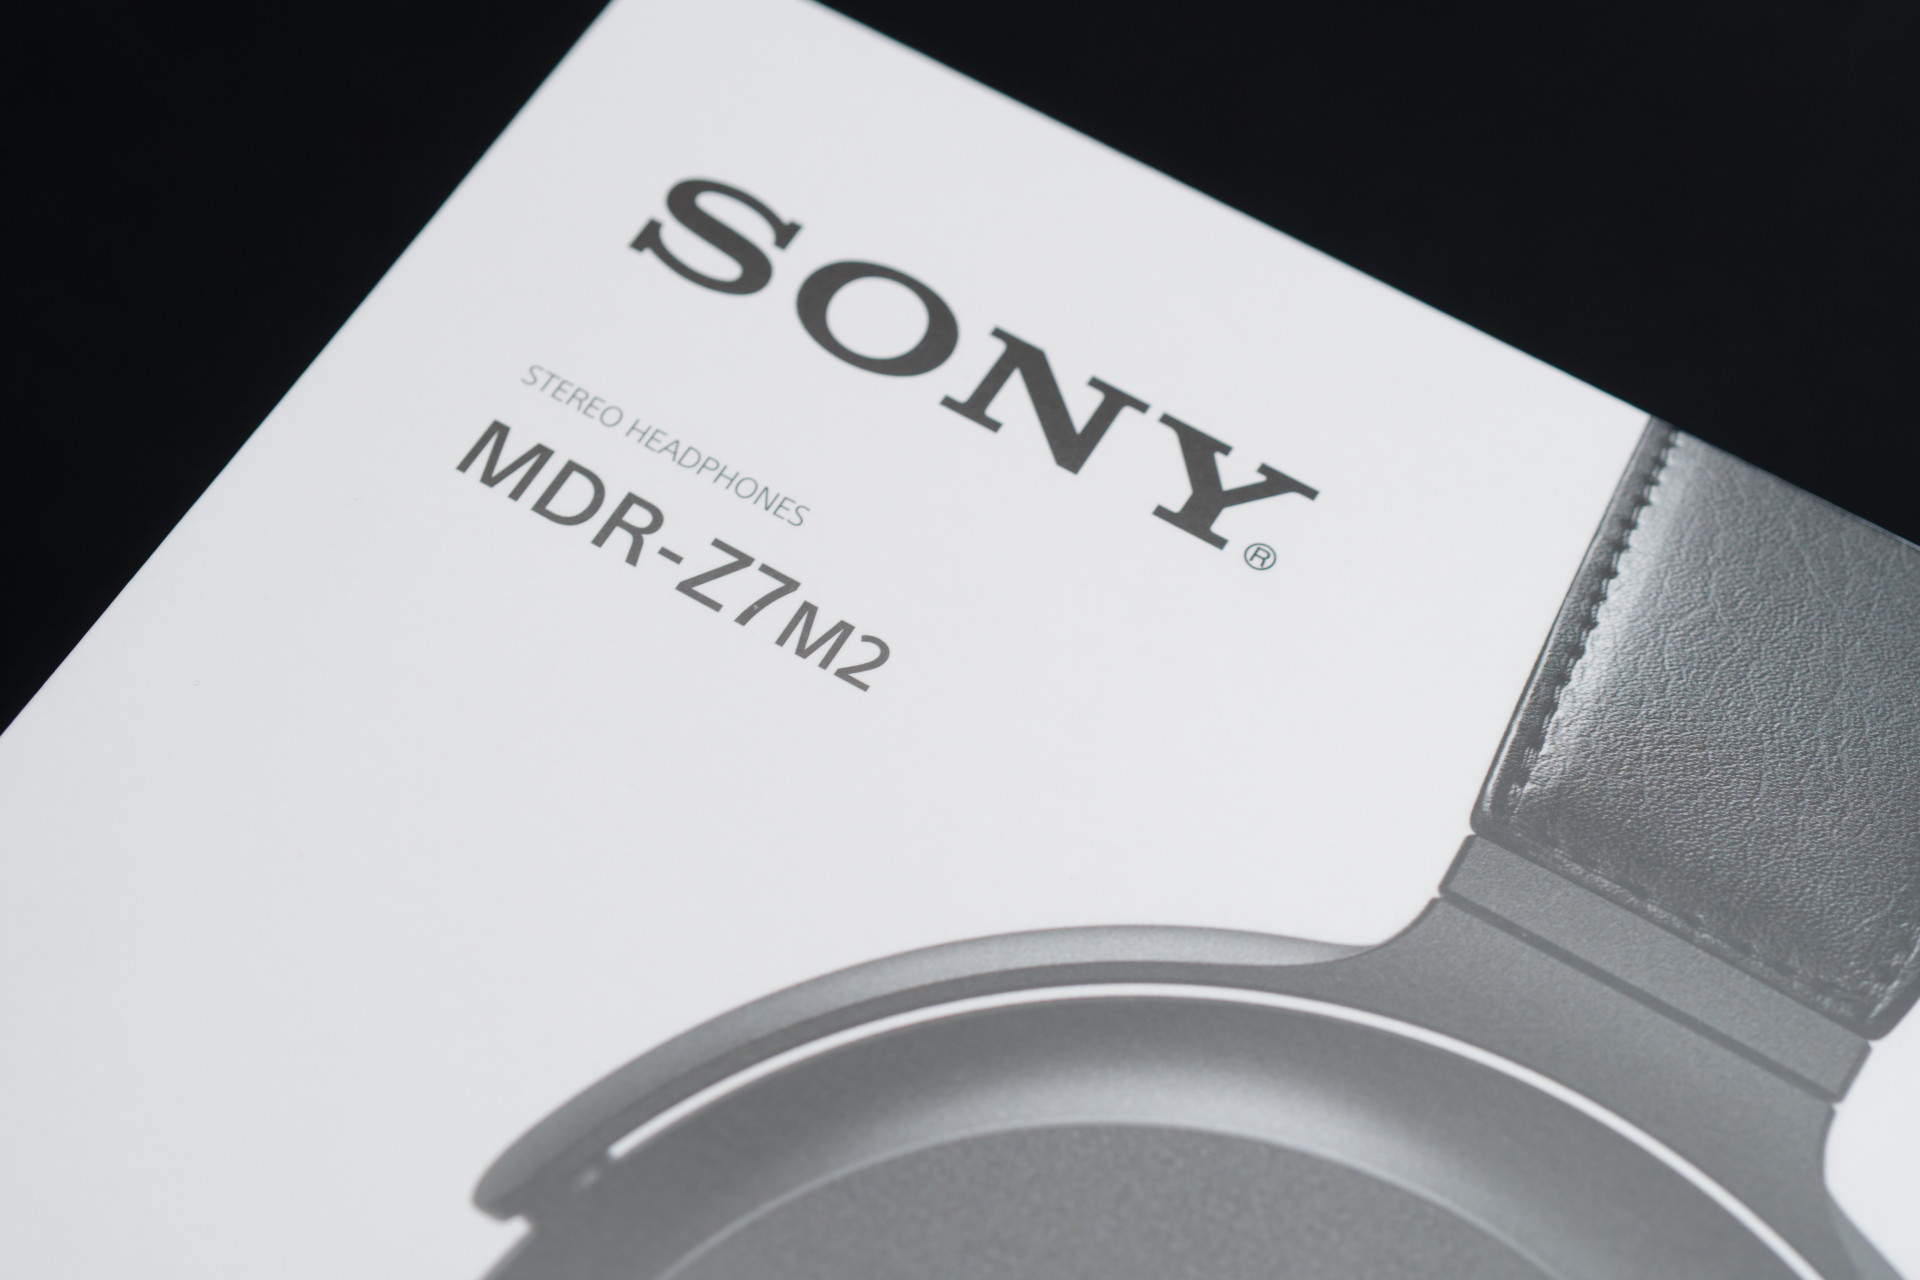 Sony MDR-Z7M2 購入｜ぐふとく！